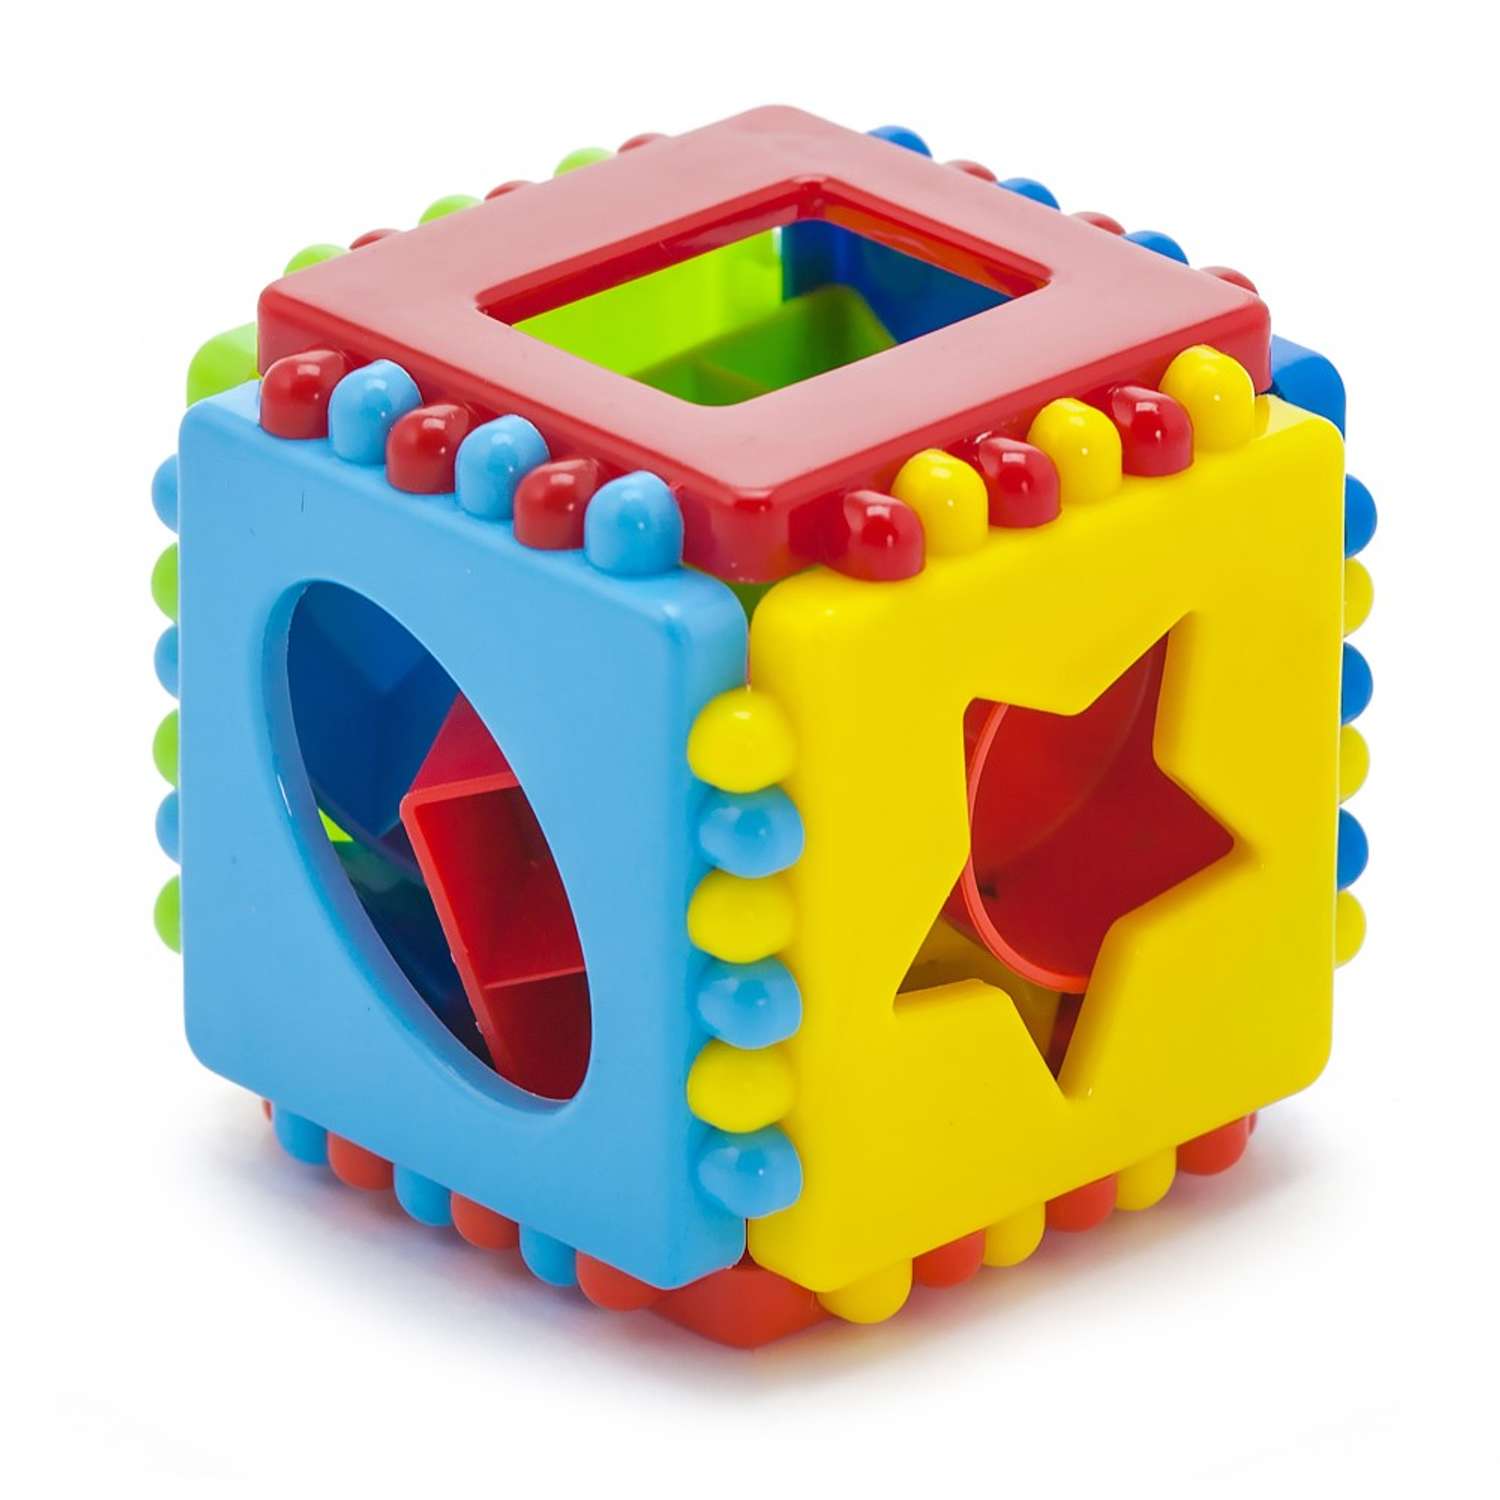 Развивающие игрушки БИПЛАНТ для малышей Конструктор Кноп-Кнопыч 114 деталей + Сортер Кубик логический малый - фото 11